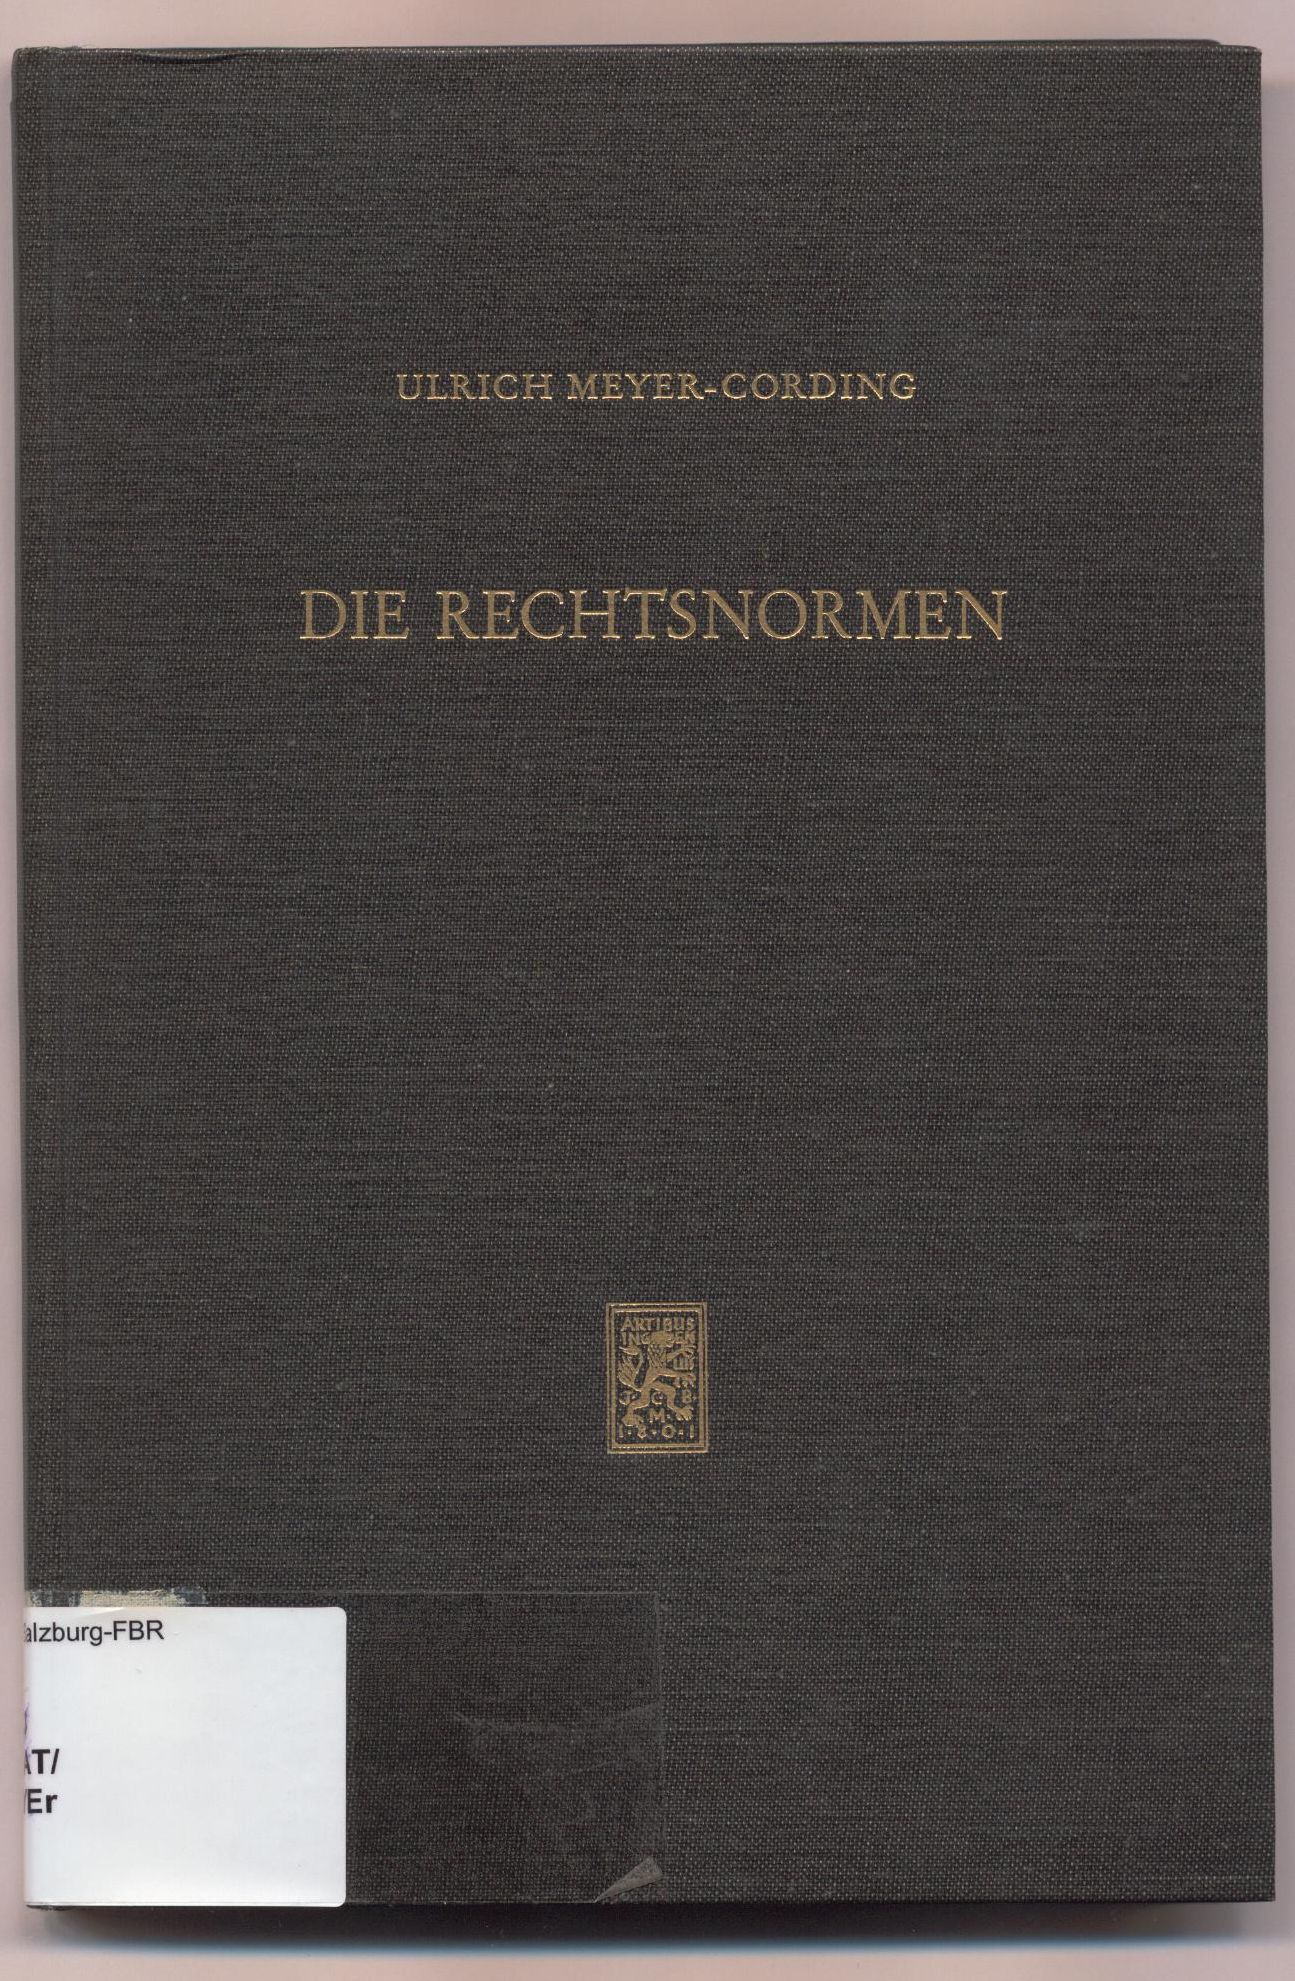 Die Rechtsnormen - Meyer-Cording, Ulrich